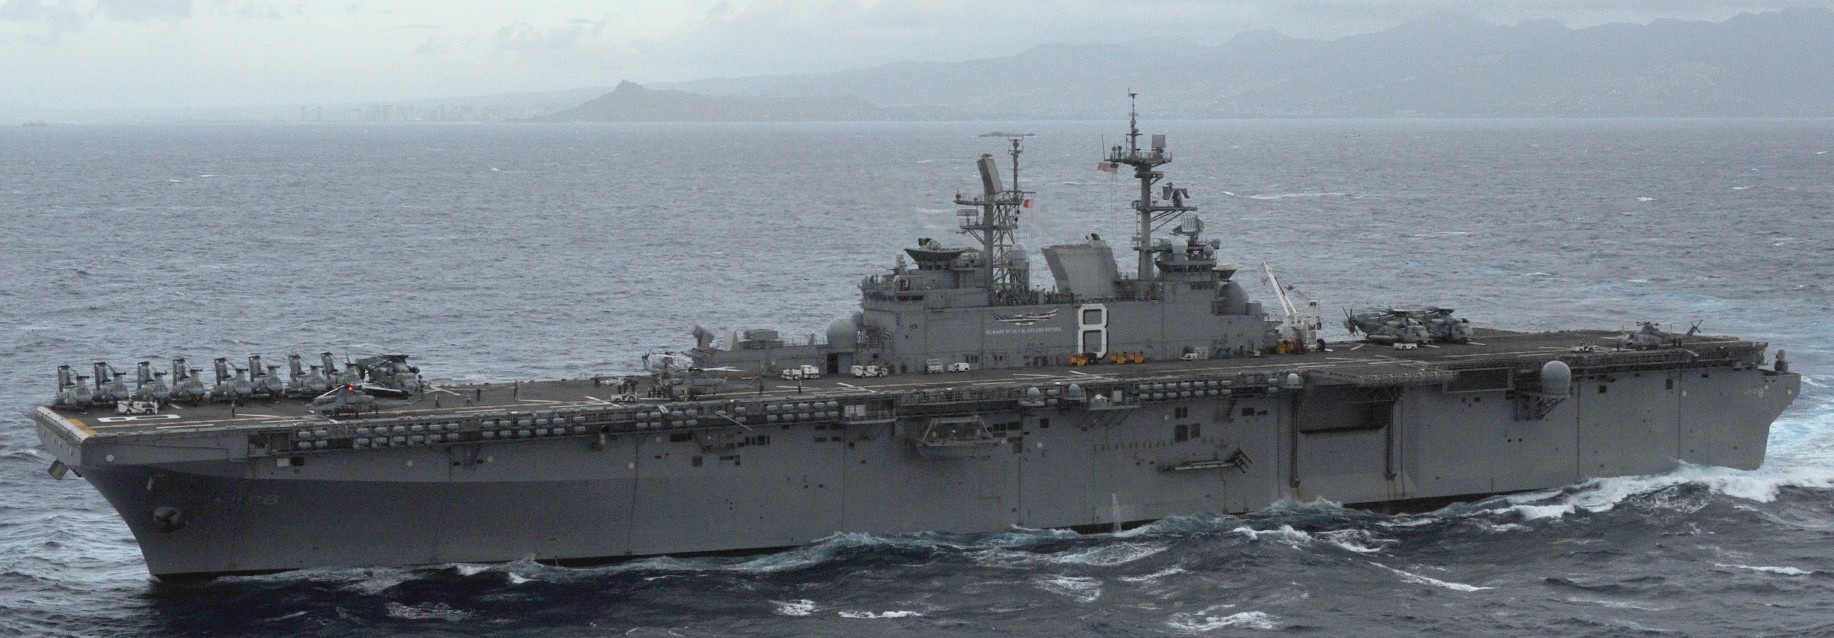 lhd-8 uss makin island amphibious assault ship landing helicopter dock us navy hmm-268 marines 53